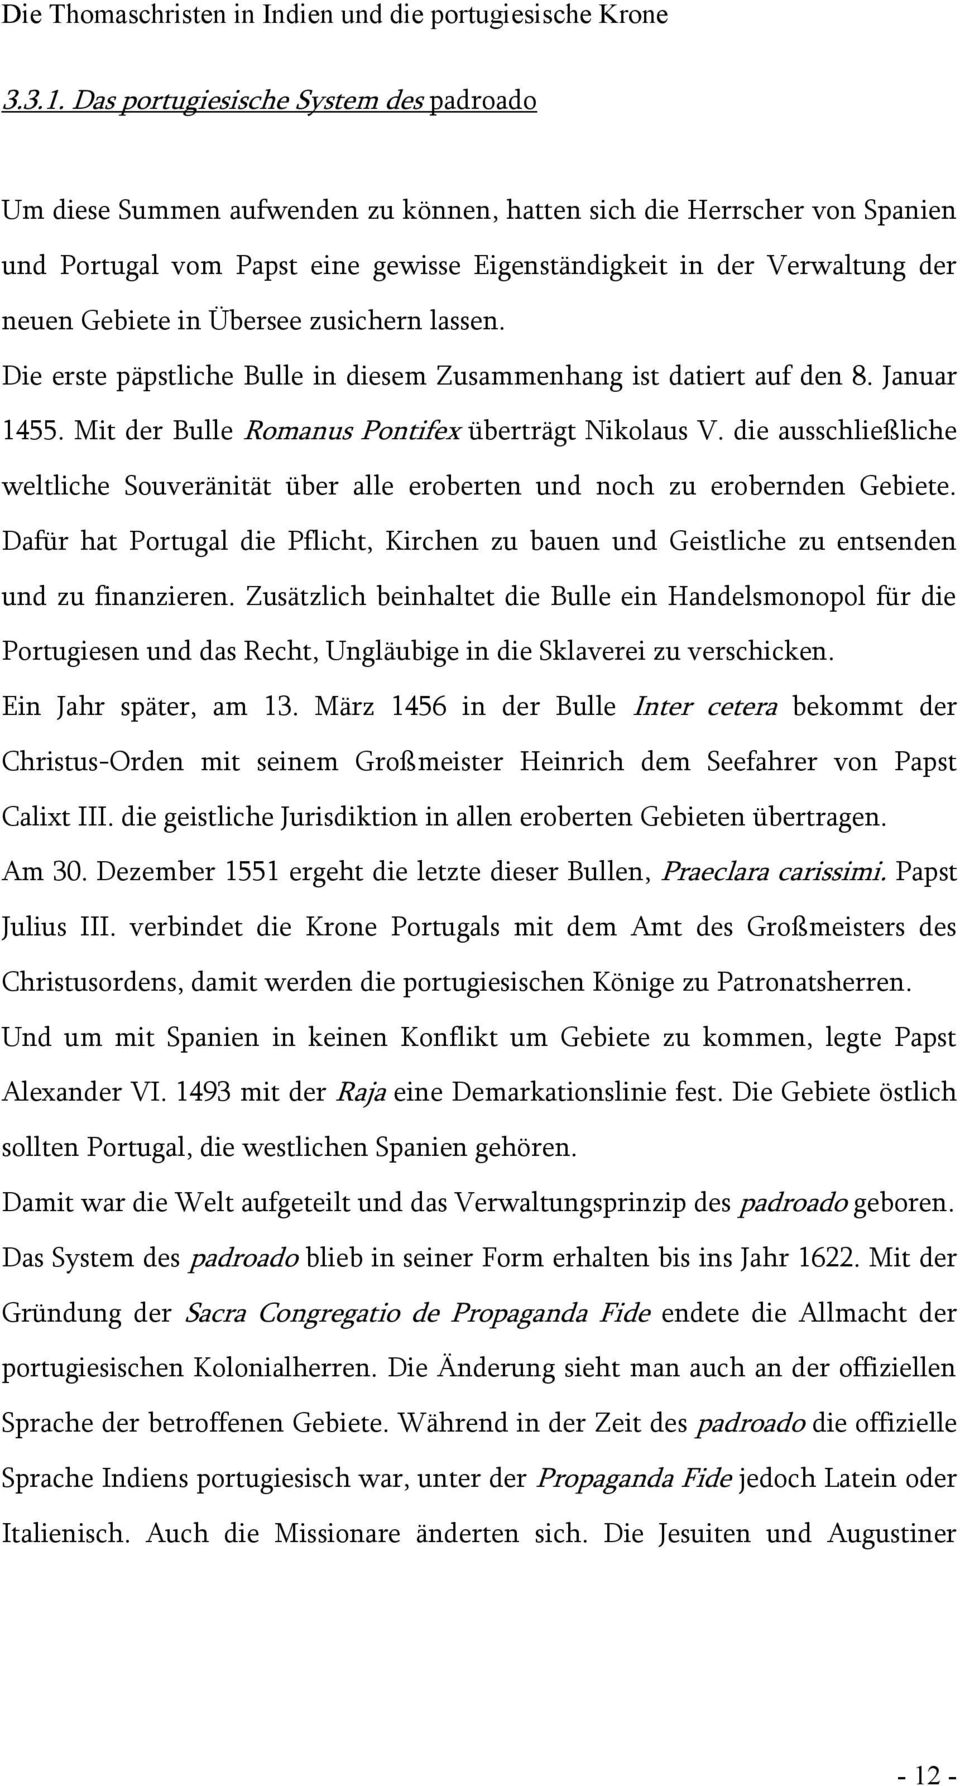 Gebiete in Übersee zusichern lassen. Die erste päpstliche Bulle in diesem Zusammenhang ist datiert auf den 8. Januar 1455. Mit der Bulle Romanus Pontifex überträgt Nikolaus V.